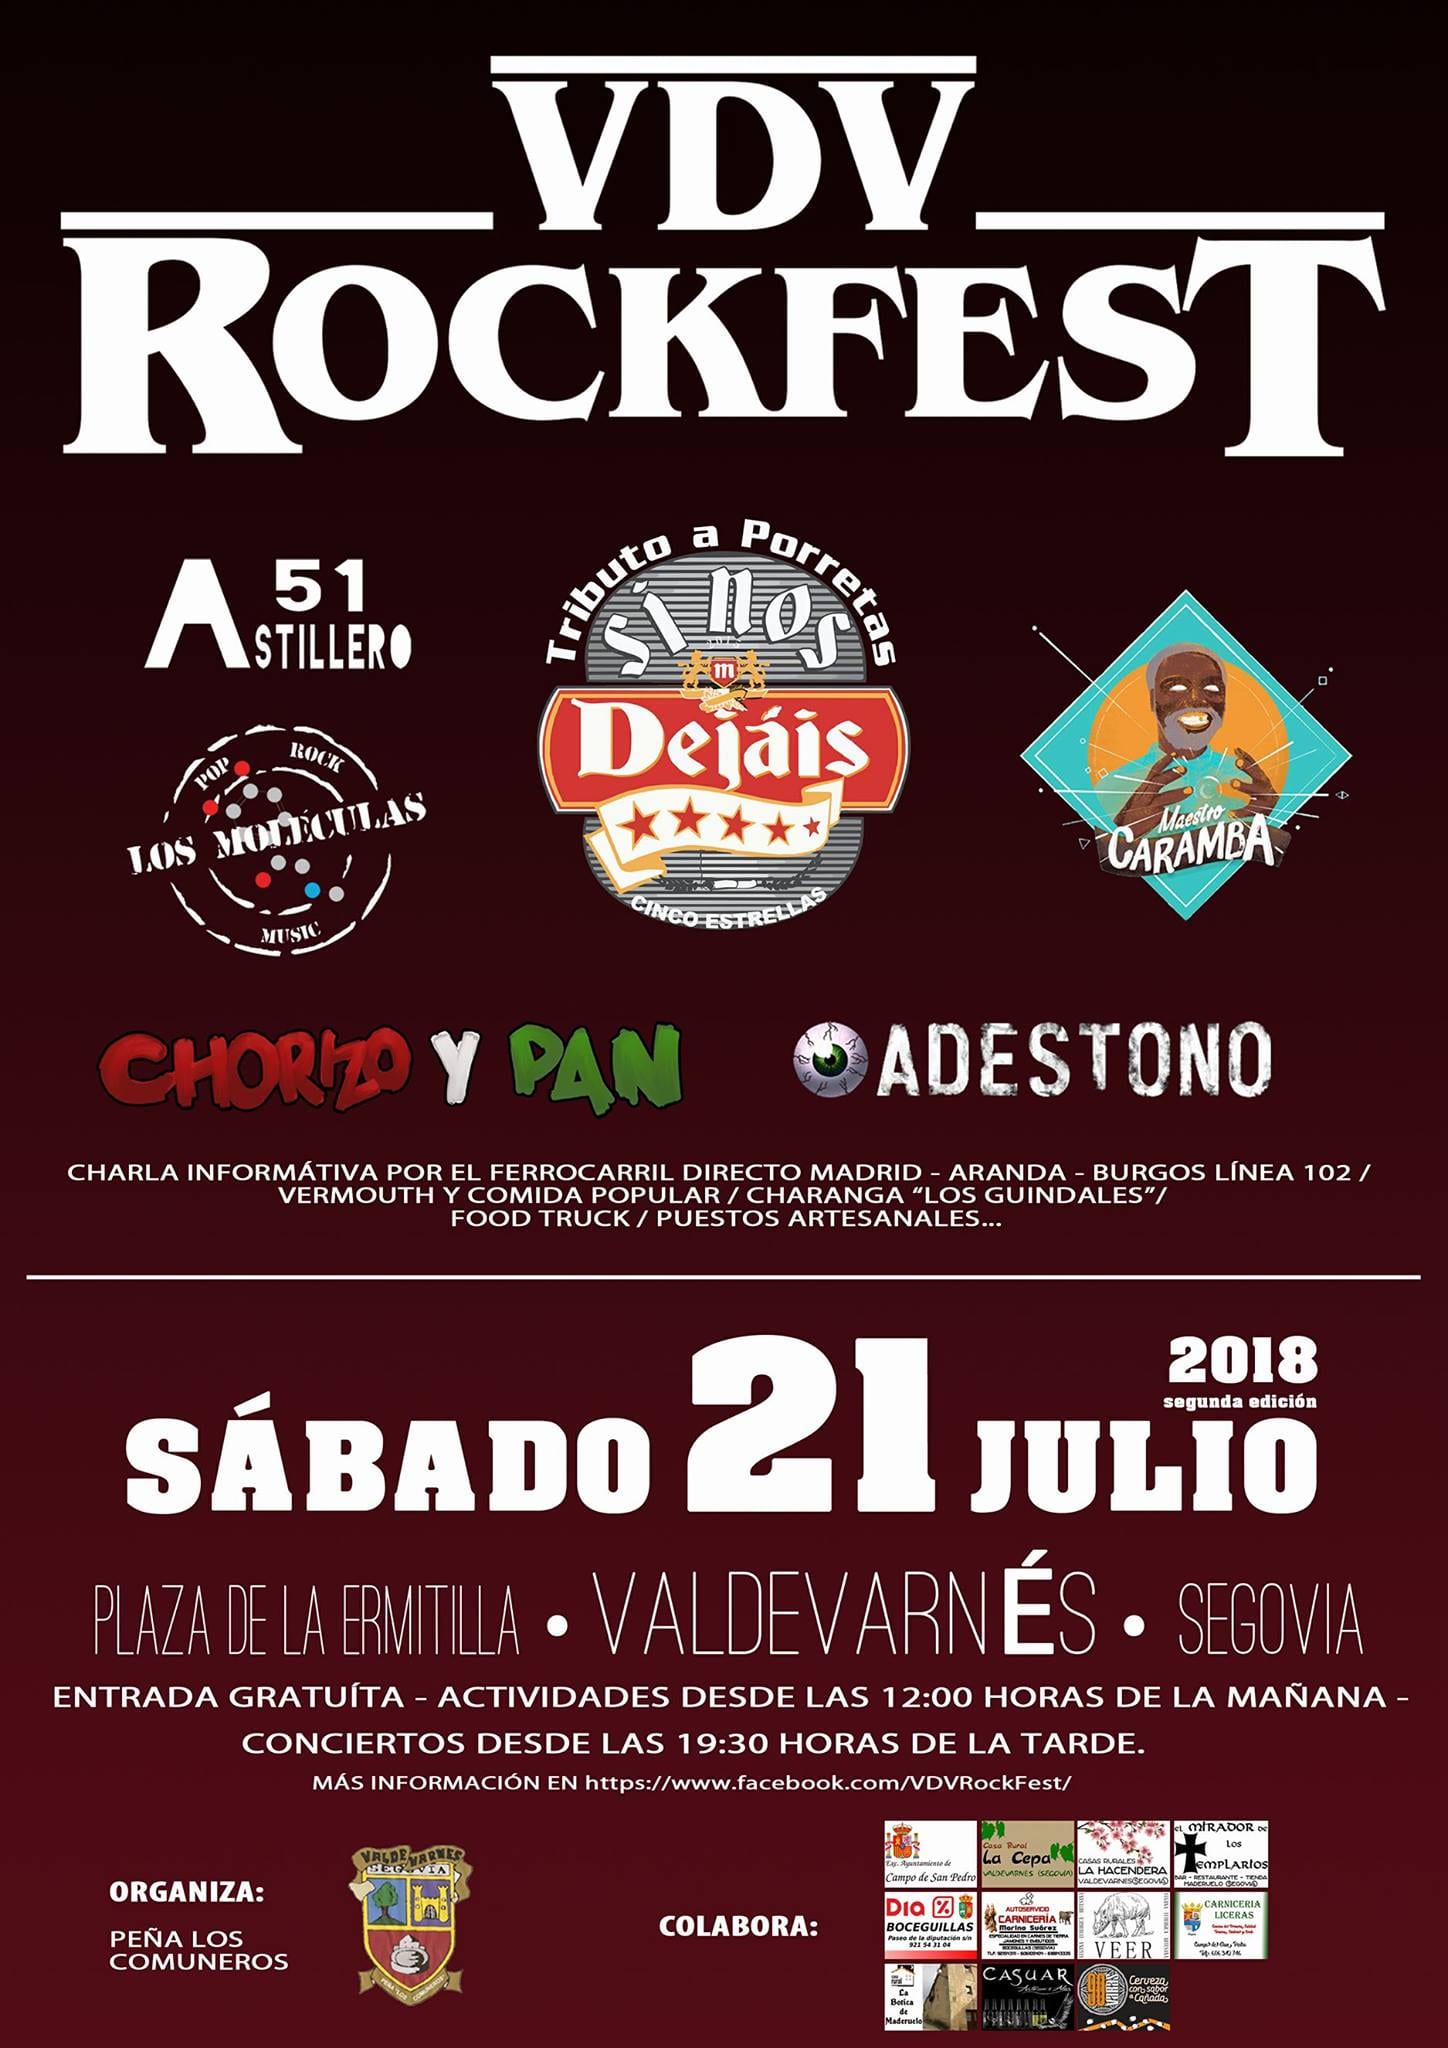 VDV ROCKFEST – Valdevarnés (Segovia), 21 de julio